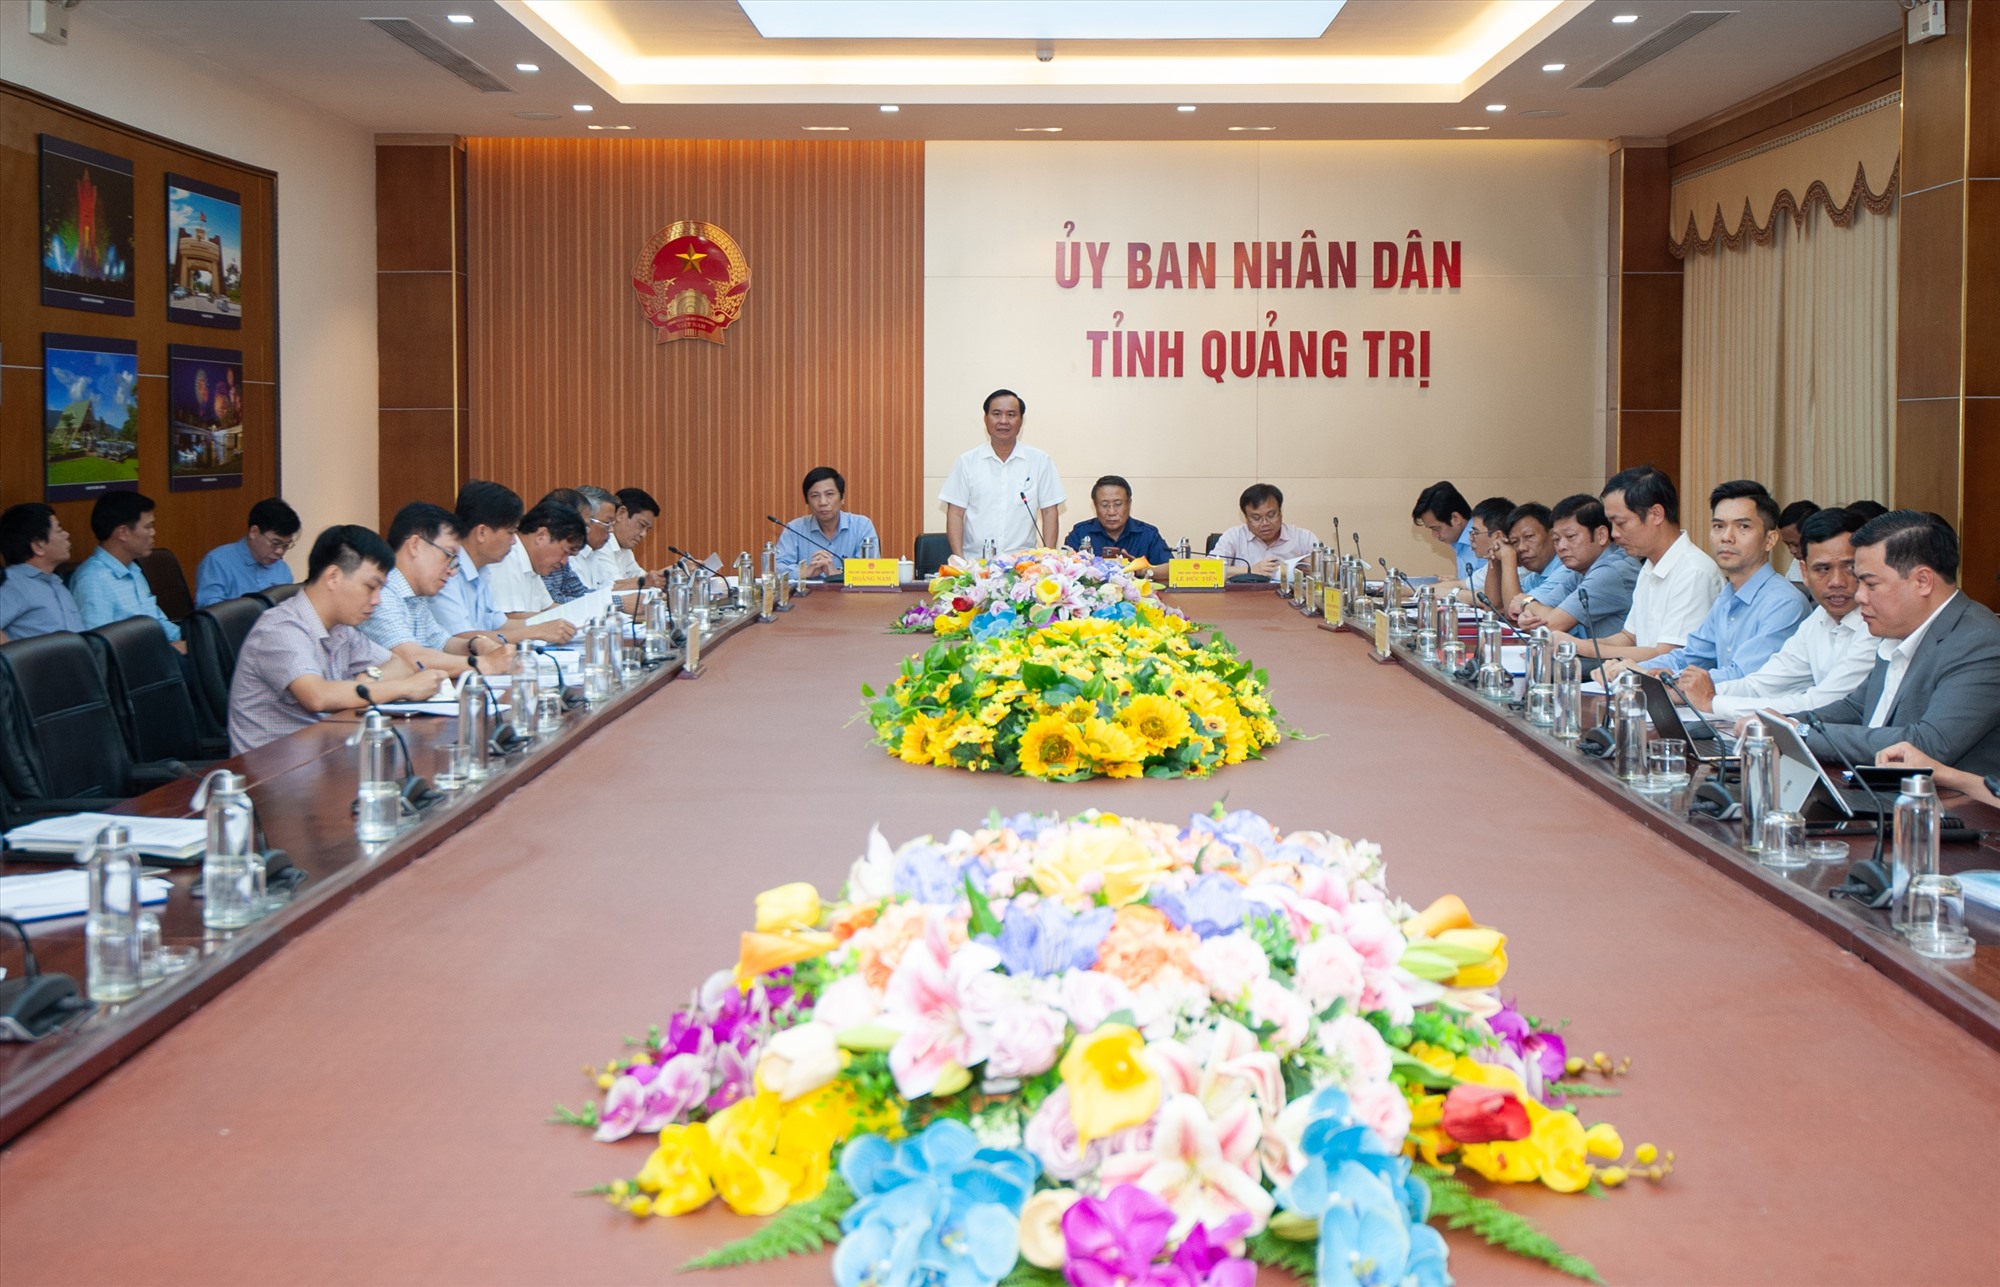 Chủ tịch UBND tỉnh Võ Văn Hưng phát biểu kết luận buổi làm việc - Ảnh: Trần Tuyền